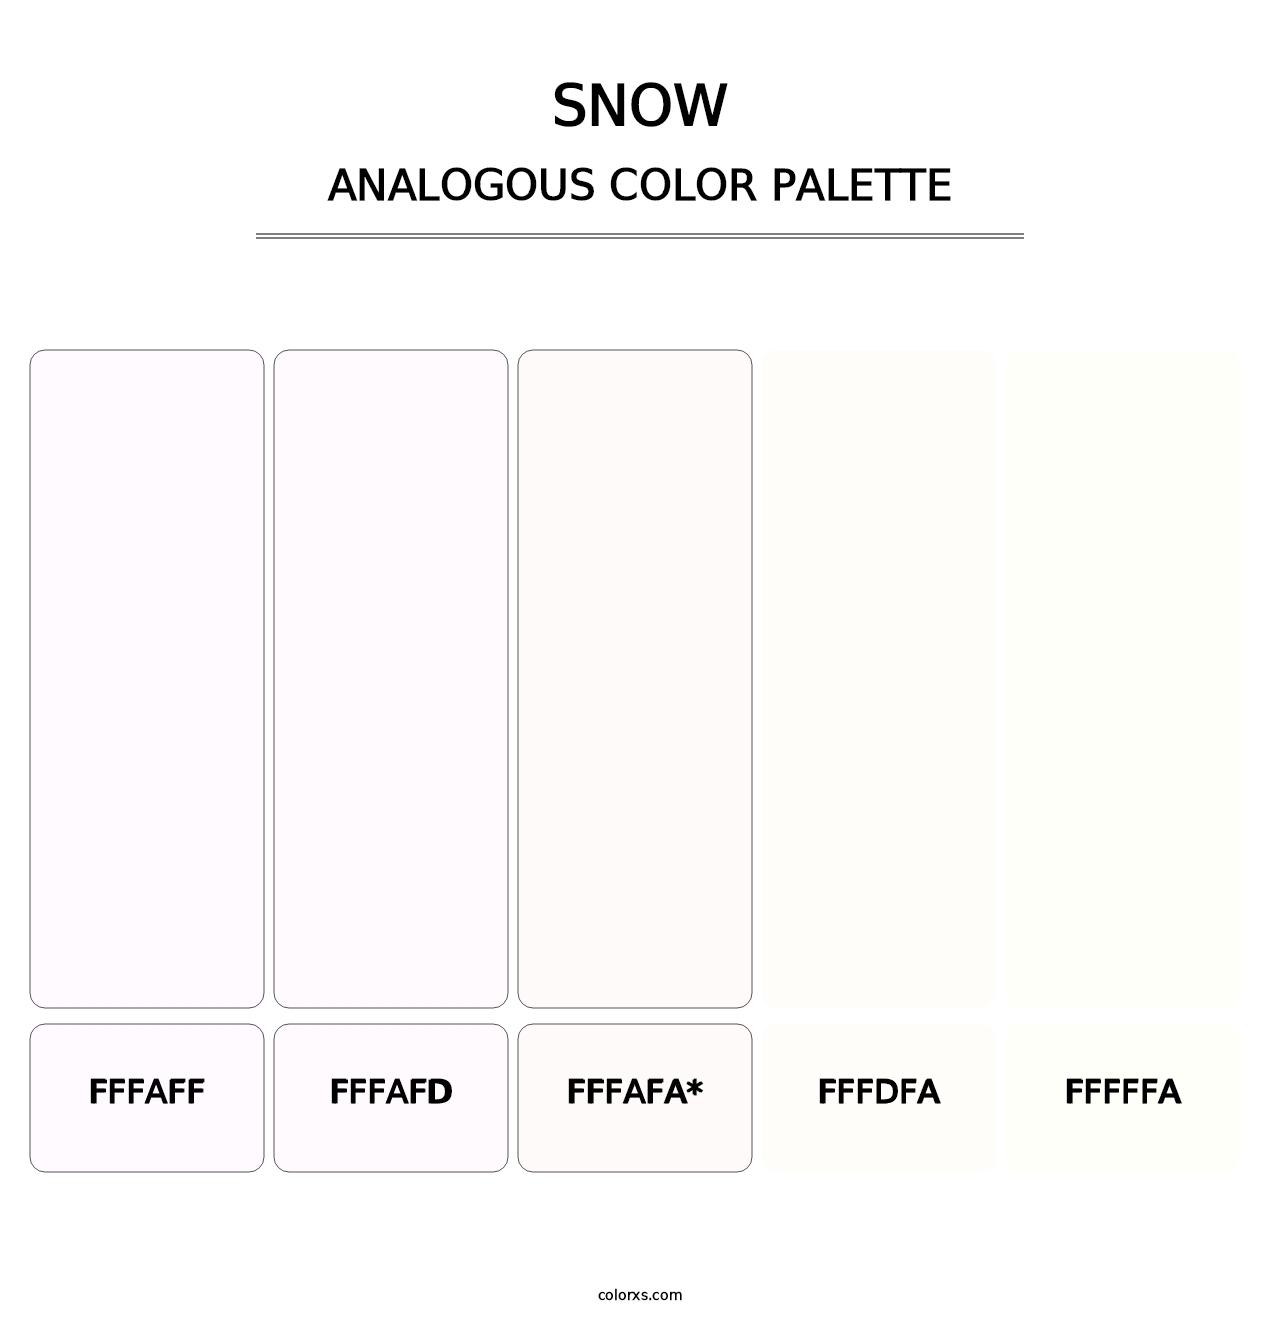 Snow - Analogous Color Palette